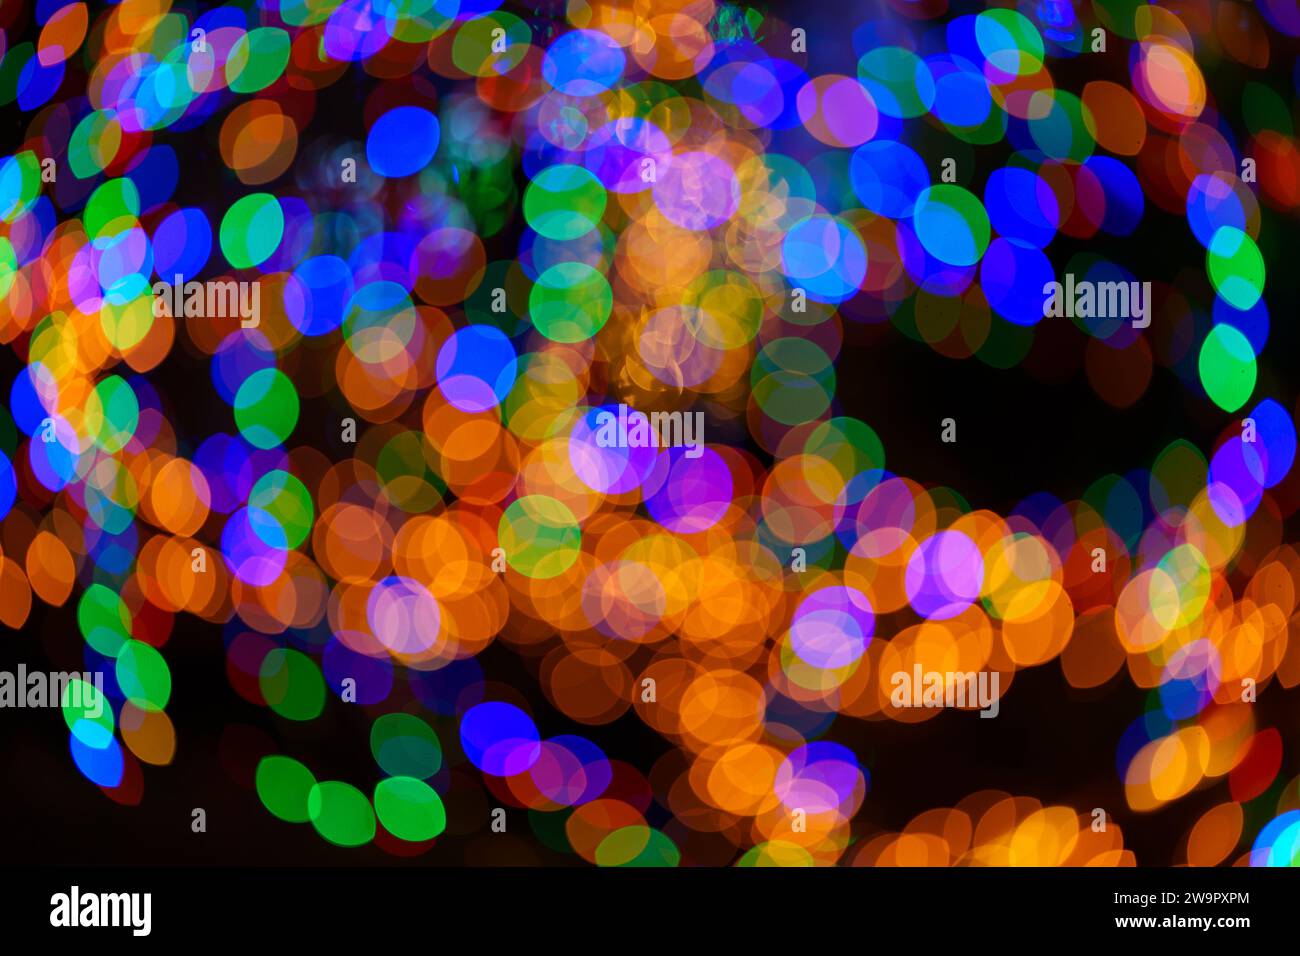 Große Bokeh-Kugeln in leuchtendem Grün, Rot, Orange und Blau wirbeln und kreieren ein magisches Ornament. Abstrakter Hintergrund. Echtes Foto. Stockfoto